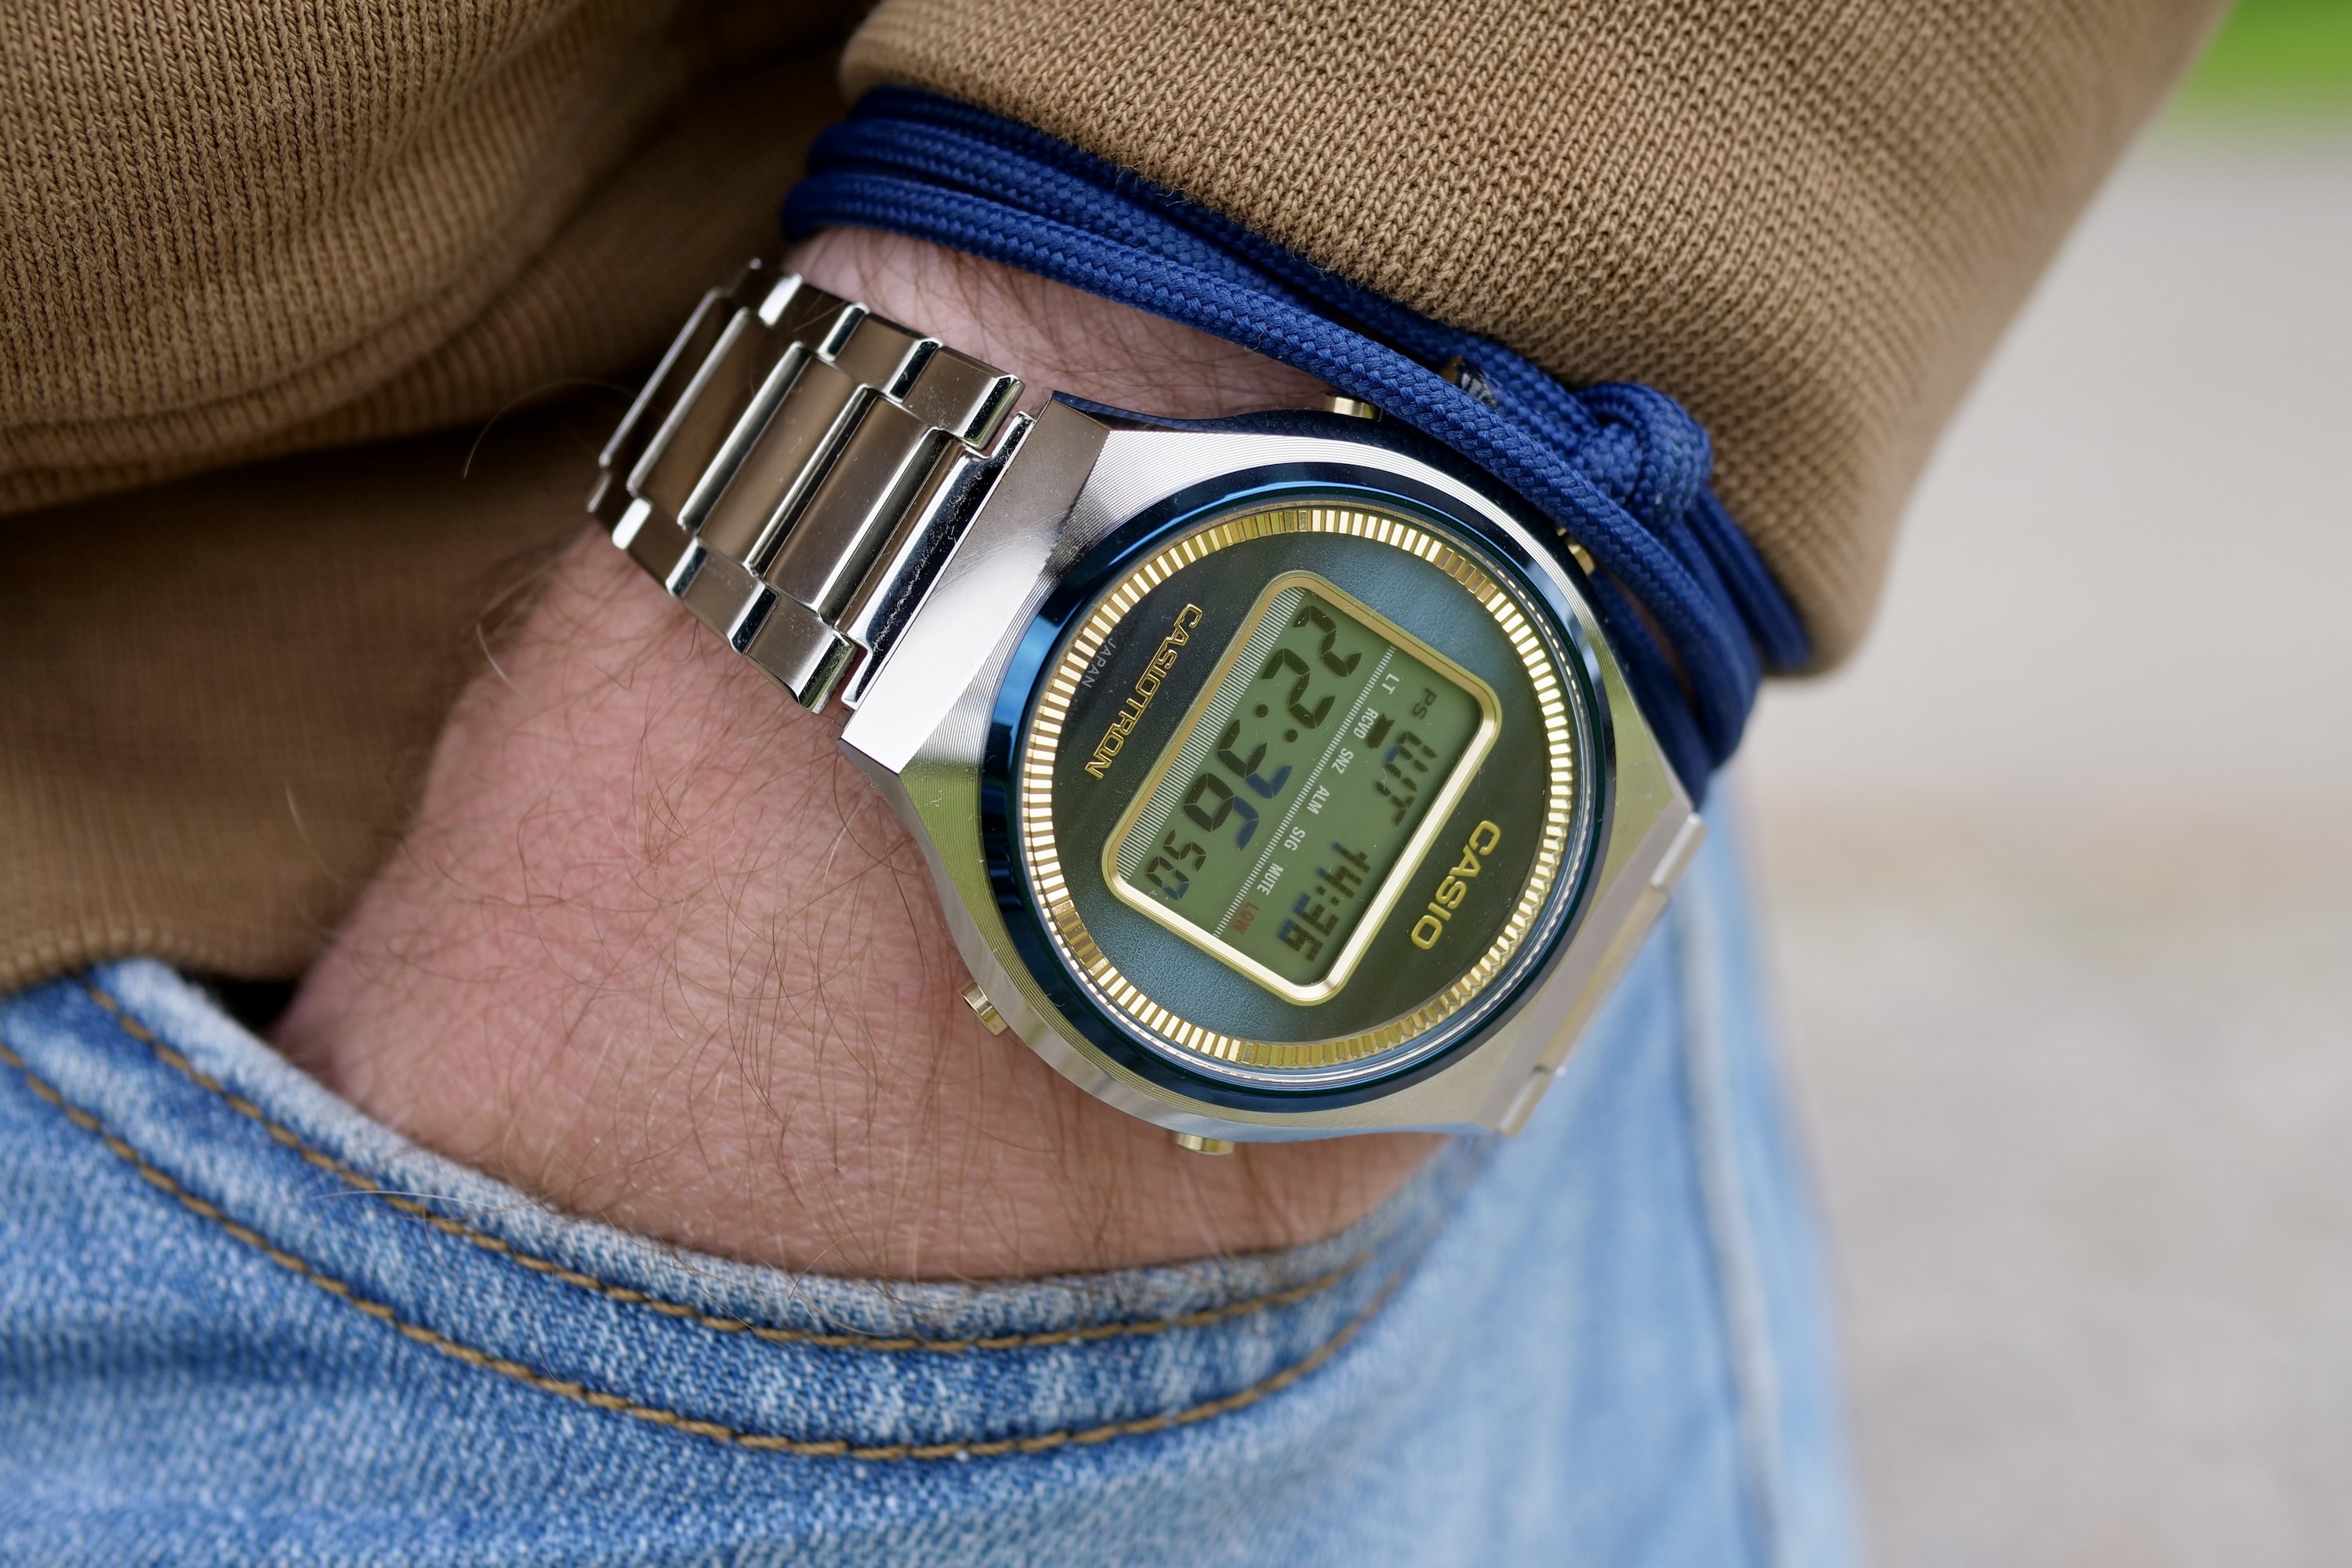 Una persona que lleva un reloj Casio Casiotron TRN-50.